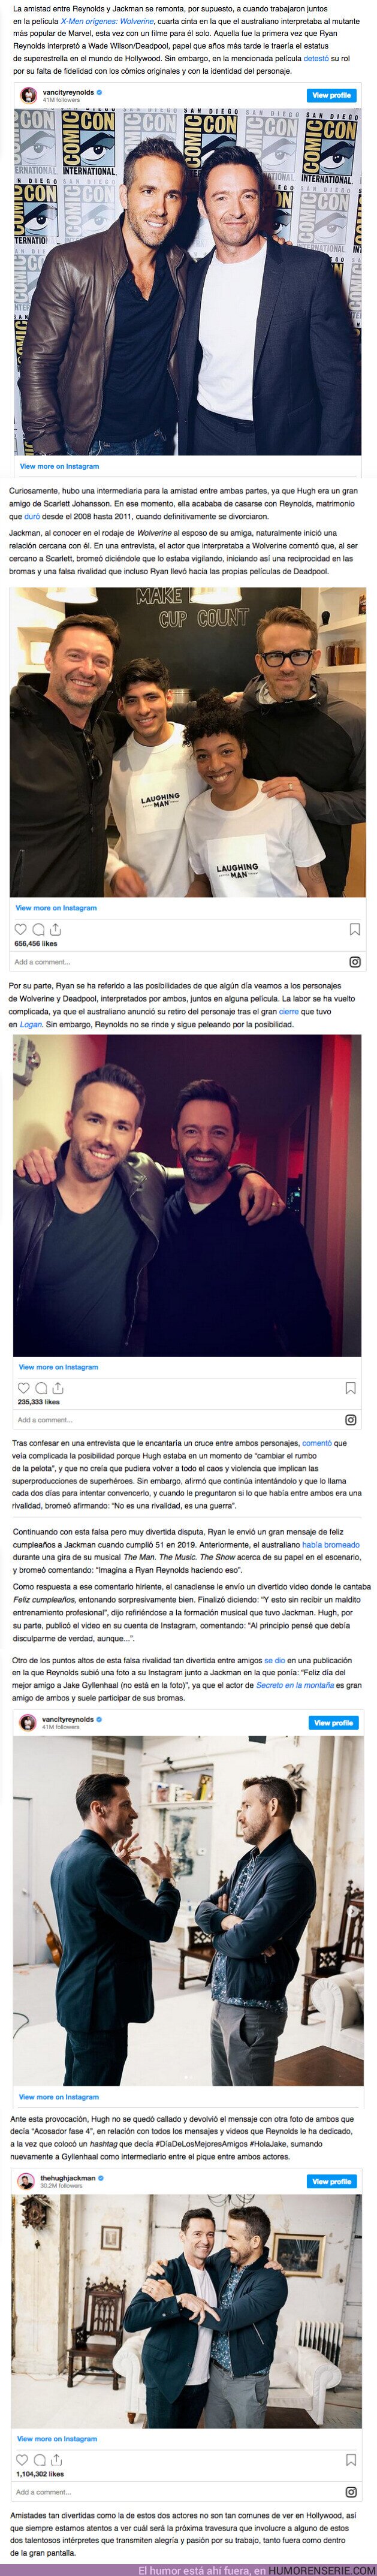 89728 - GALERÍA: La historia de amistad entre Hugh Jackman y Ryan Reynolds, que demuestra que en Hollywood el ego no es lo más importante